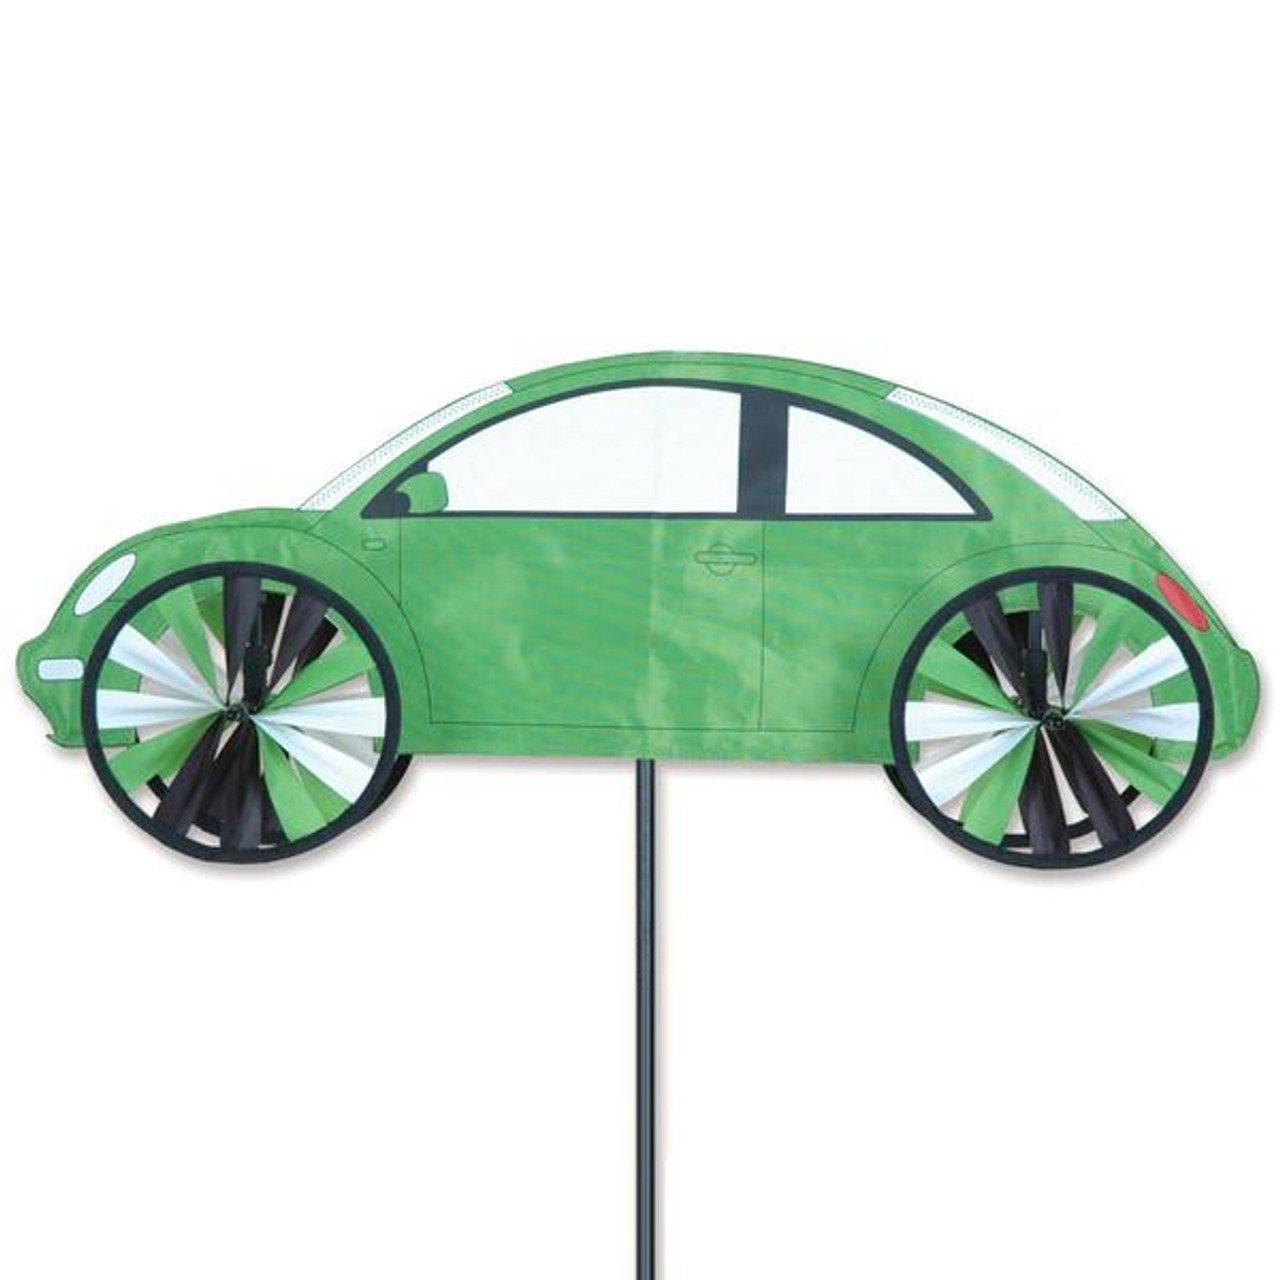 Premier Kites - 24 in. VW Beetle Spinner - Green - The Kite Guys